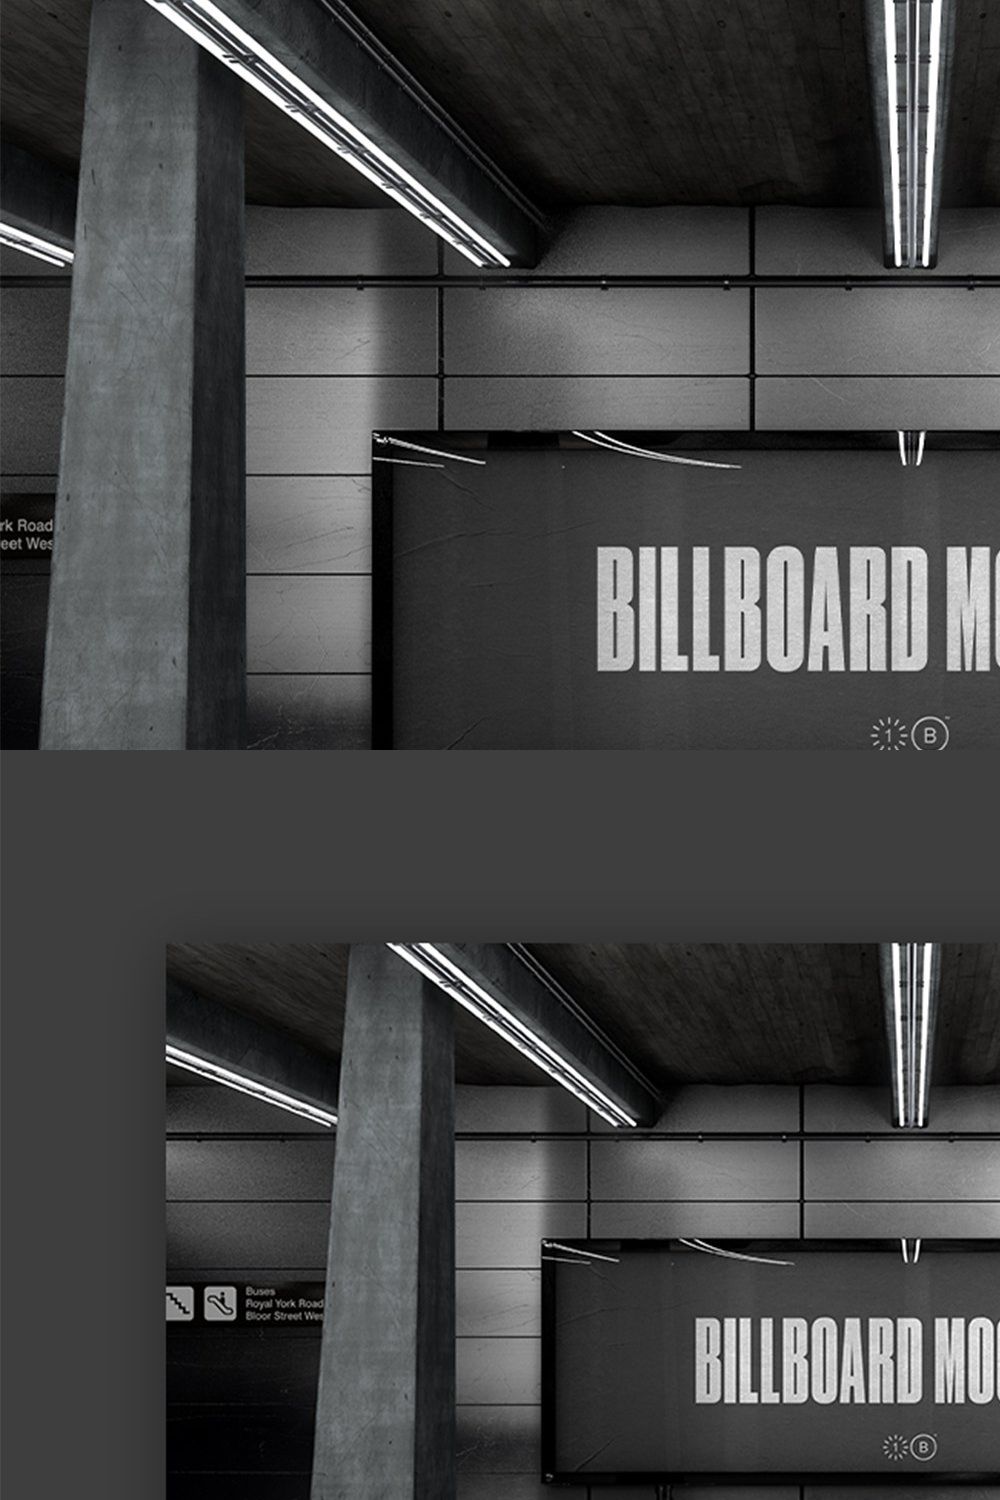 Subway Billboard Mockup - No. 001 pinterest preview image.